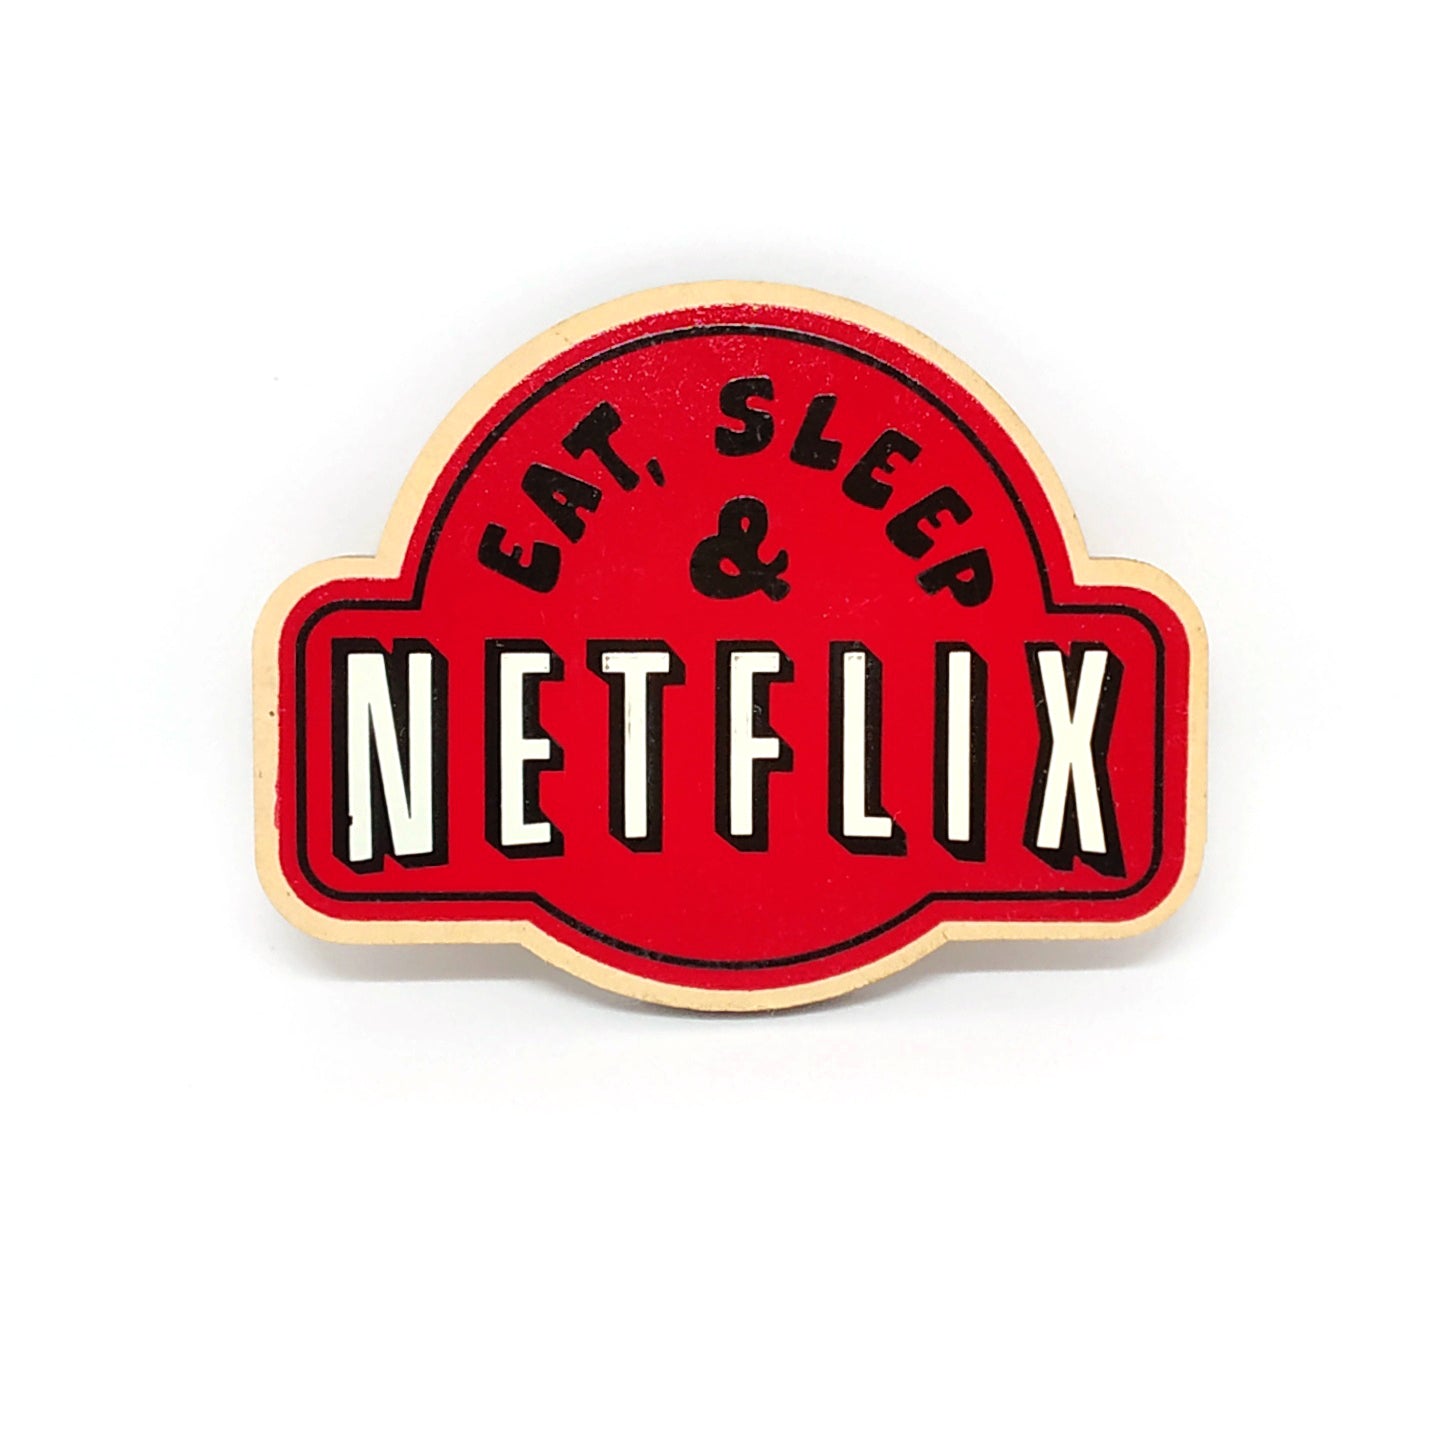 Eat, Sleep & Netflix - Fridge Magnet